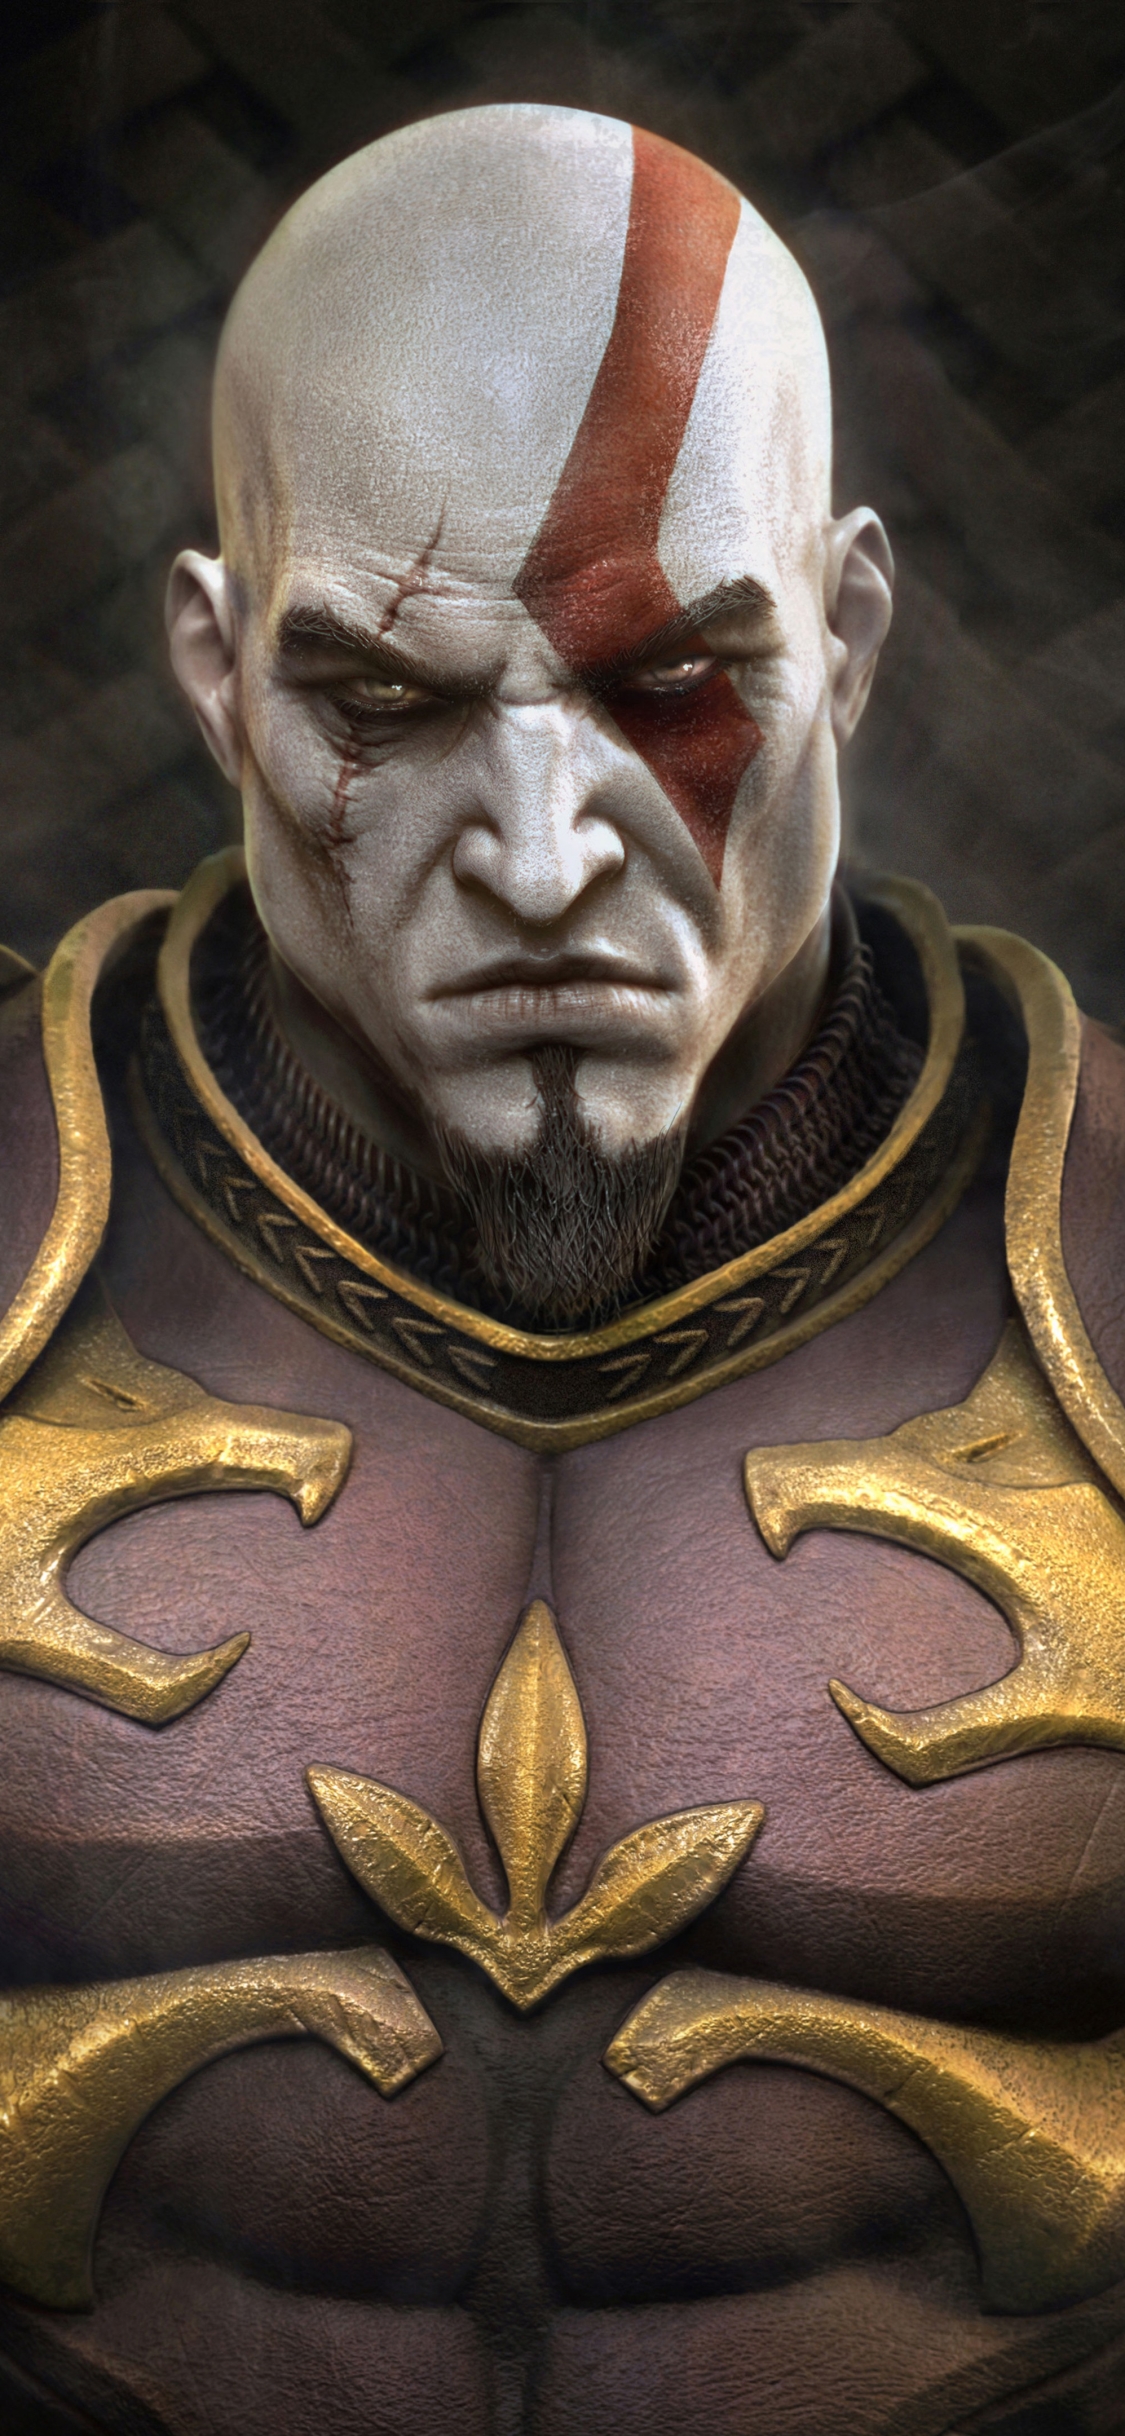 god of war ii, video game, kratos (god of war), spartan, god of war images